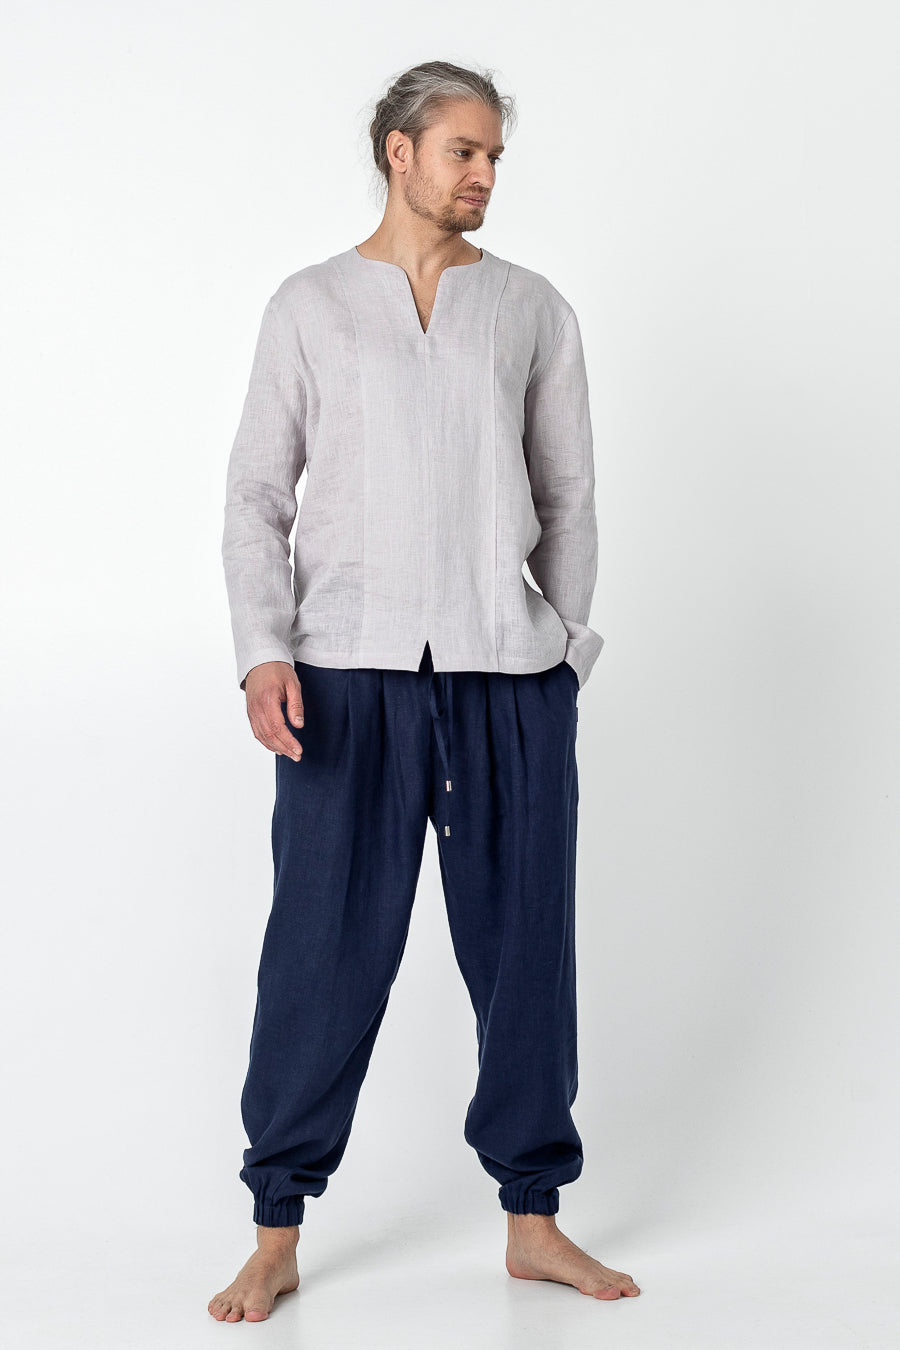 AKITORI | Long sleeve linen t shirt for men - Mezzoroni